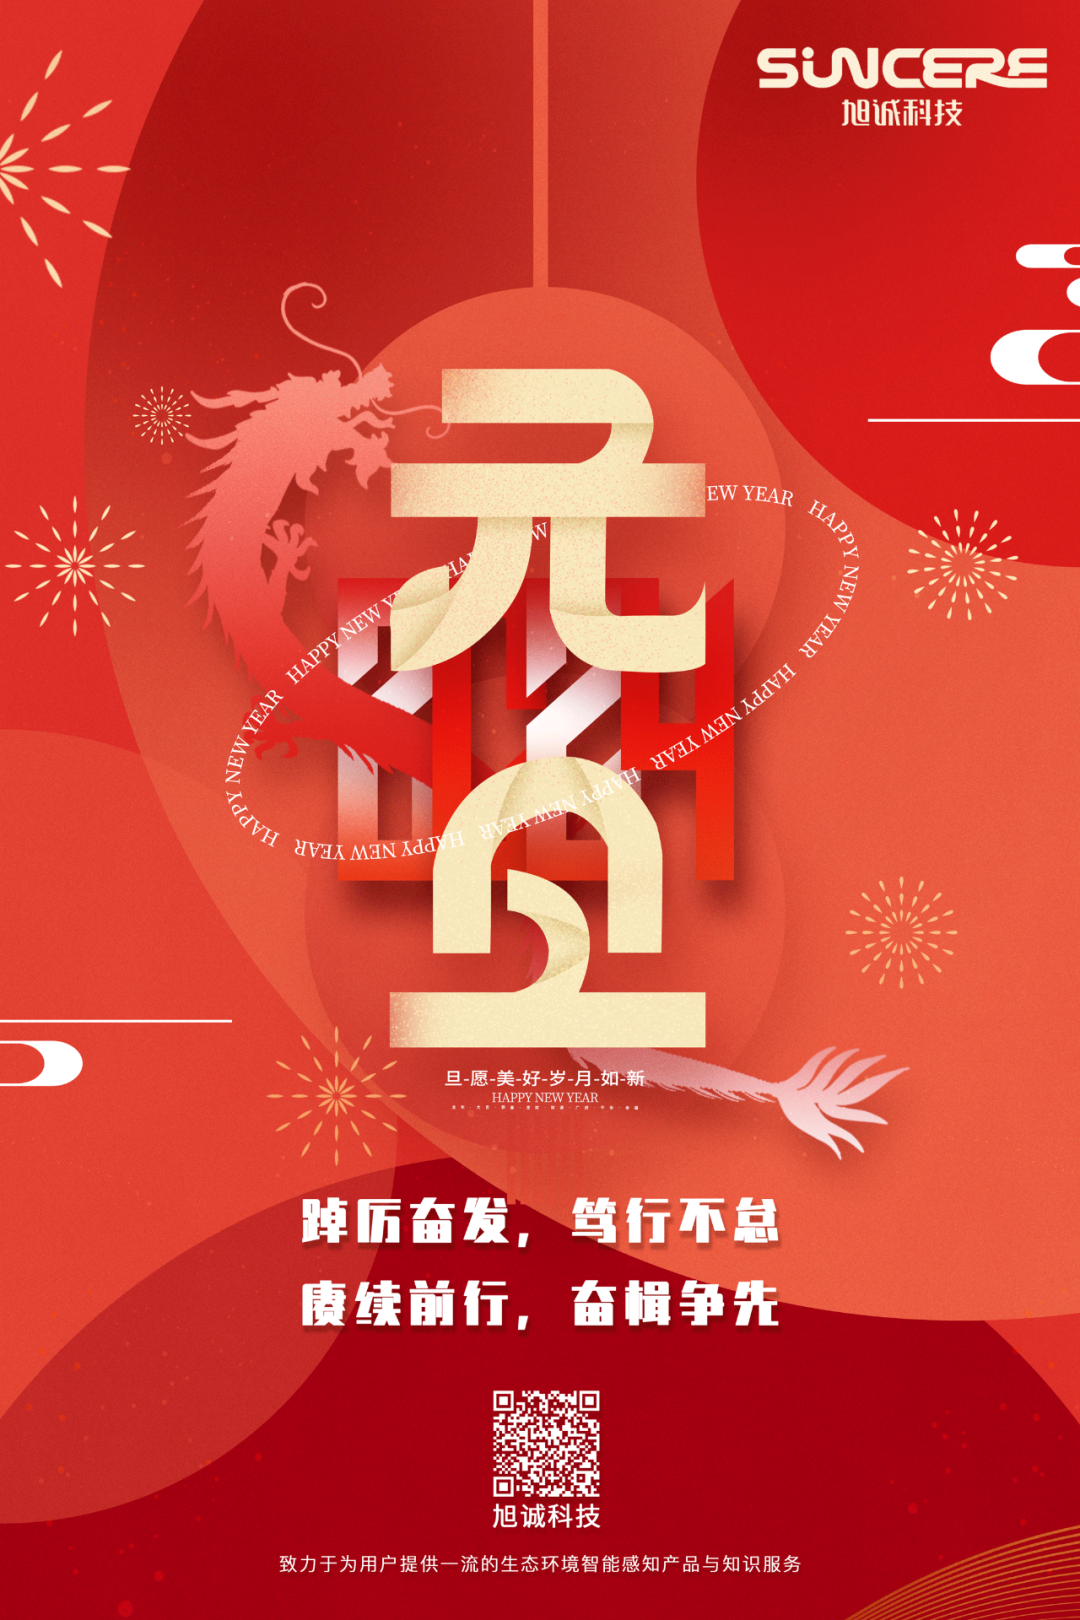 迎新年 · 启新篇丨beat365中文官方网站科技祝您元旦快乐